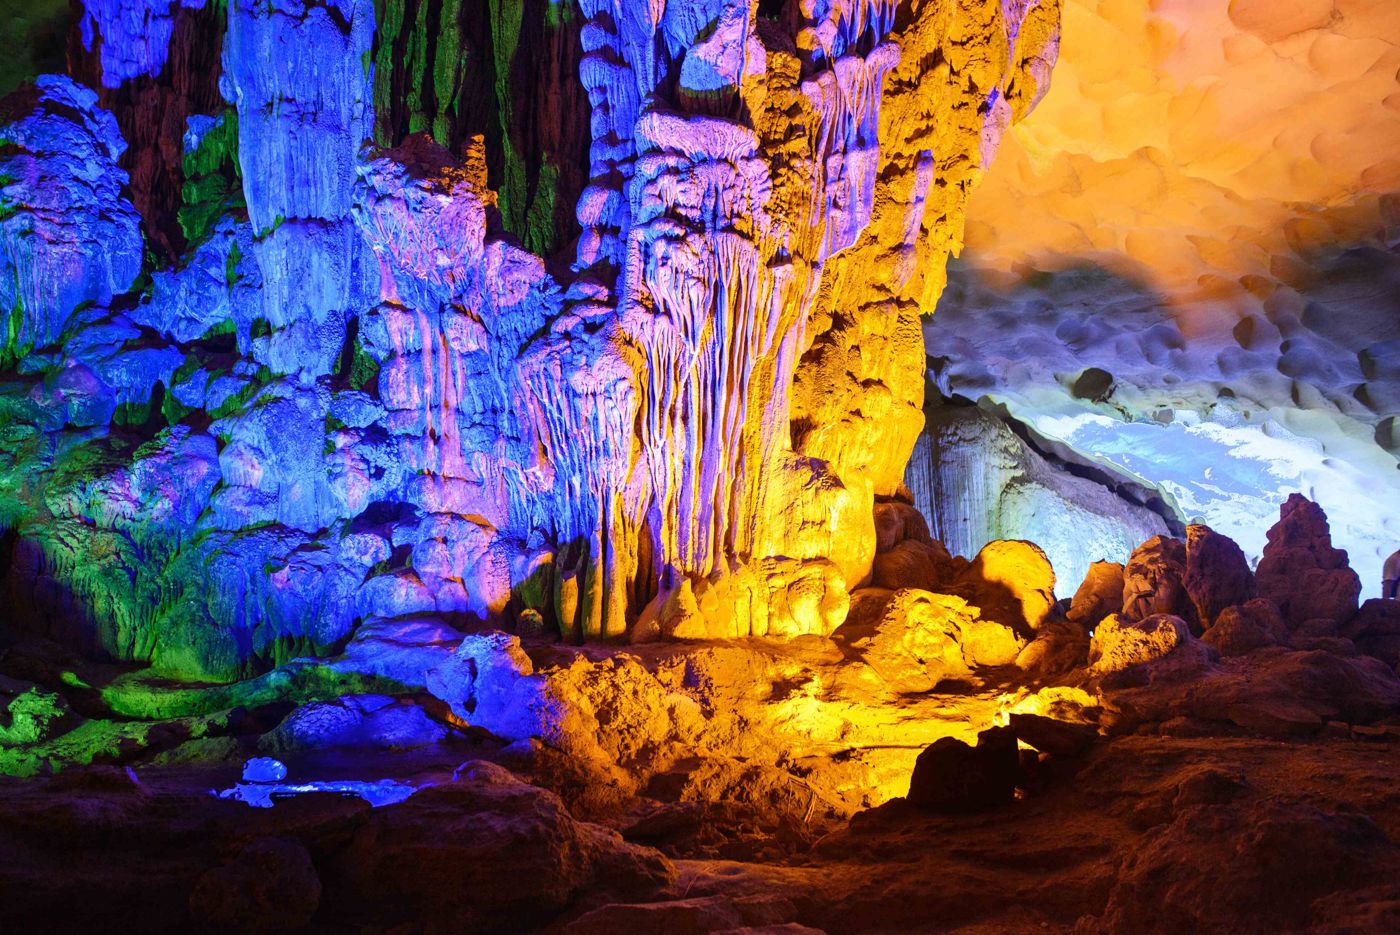 Ha Long Bay's “Fantastic” Cave Legends